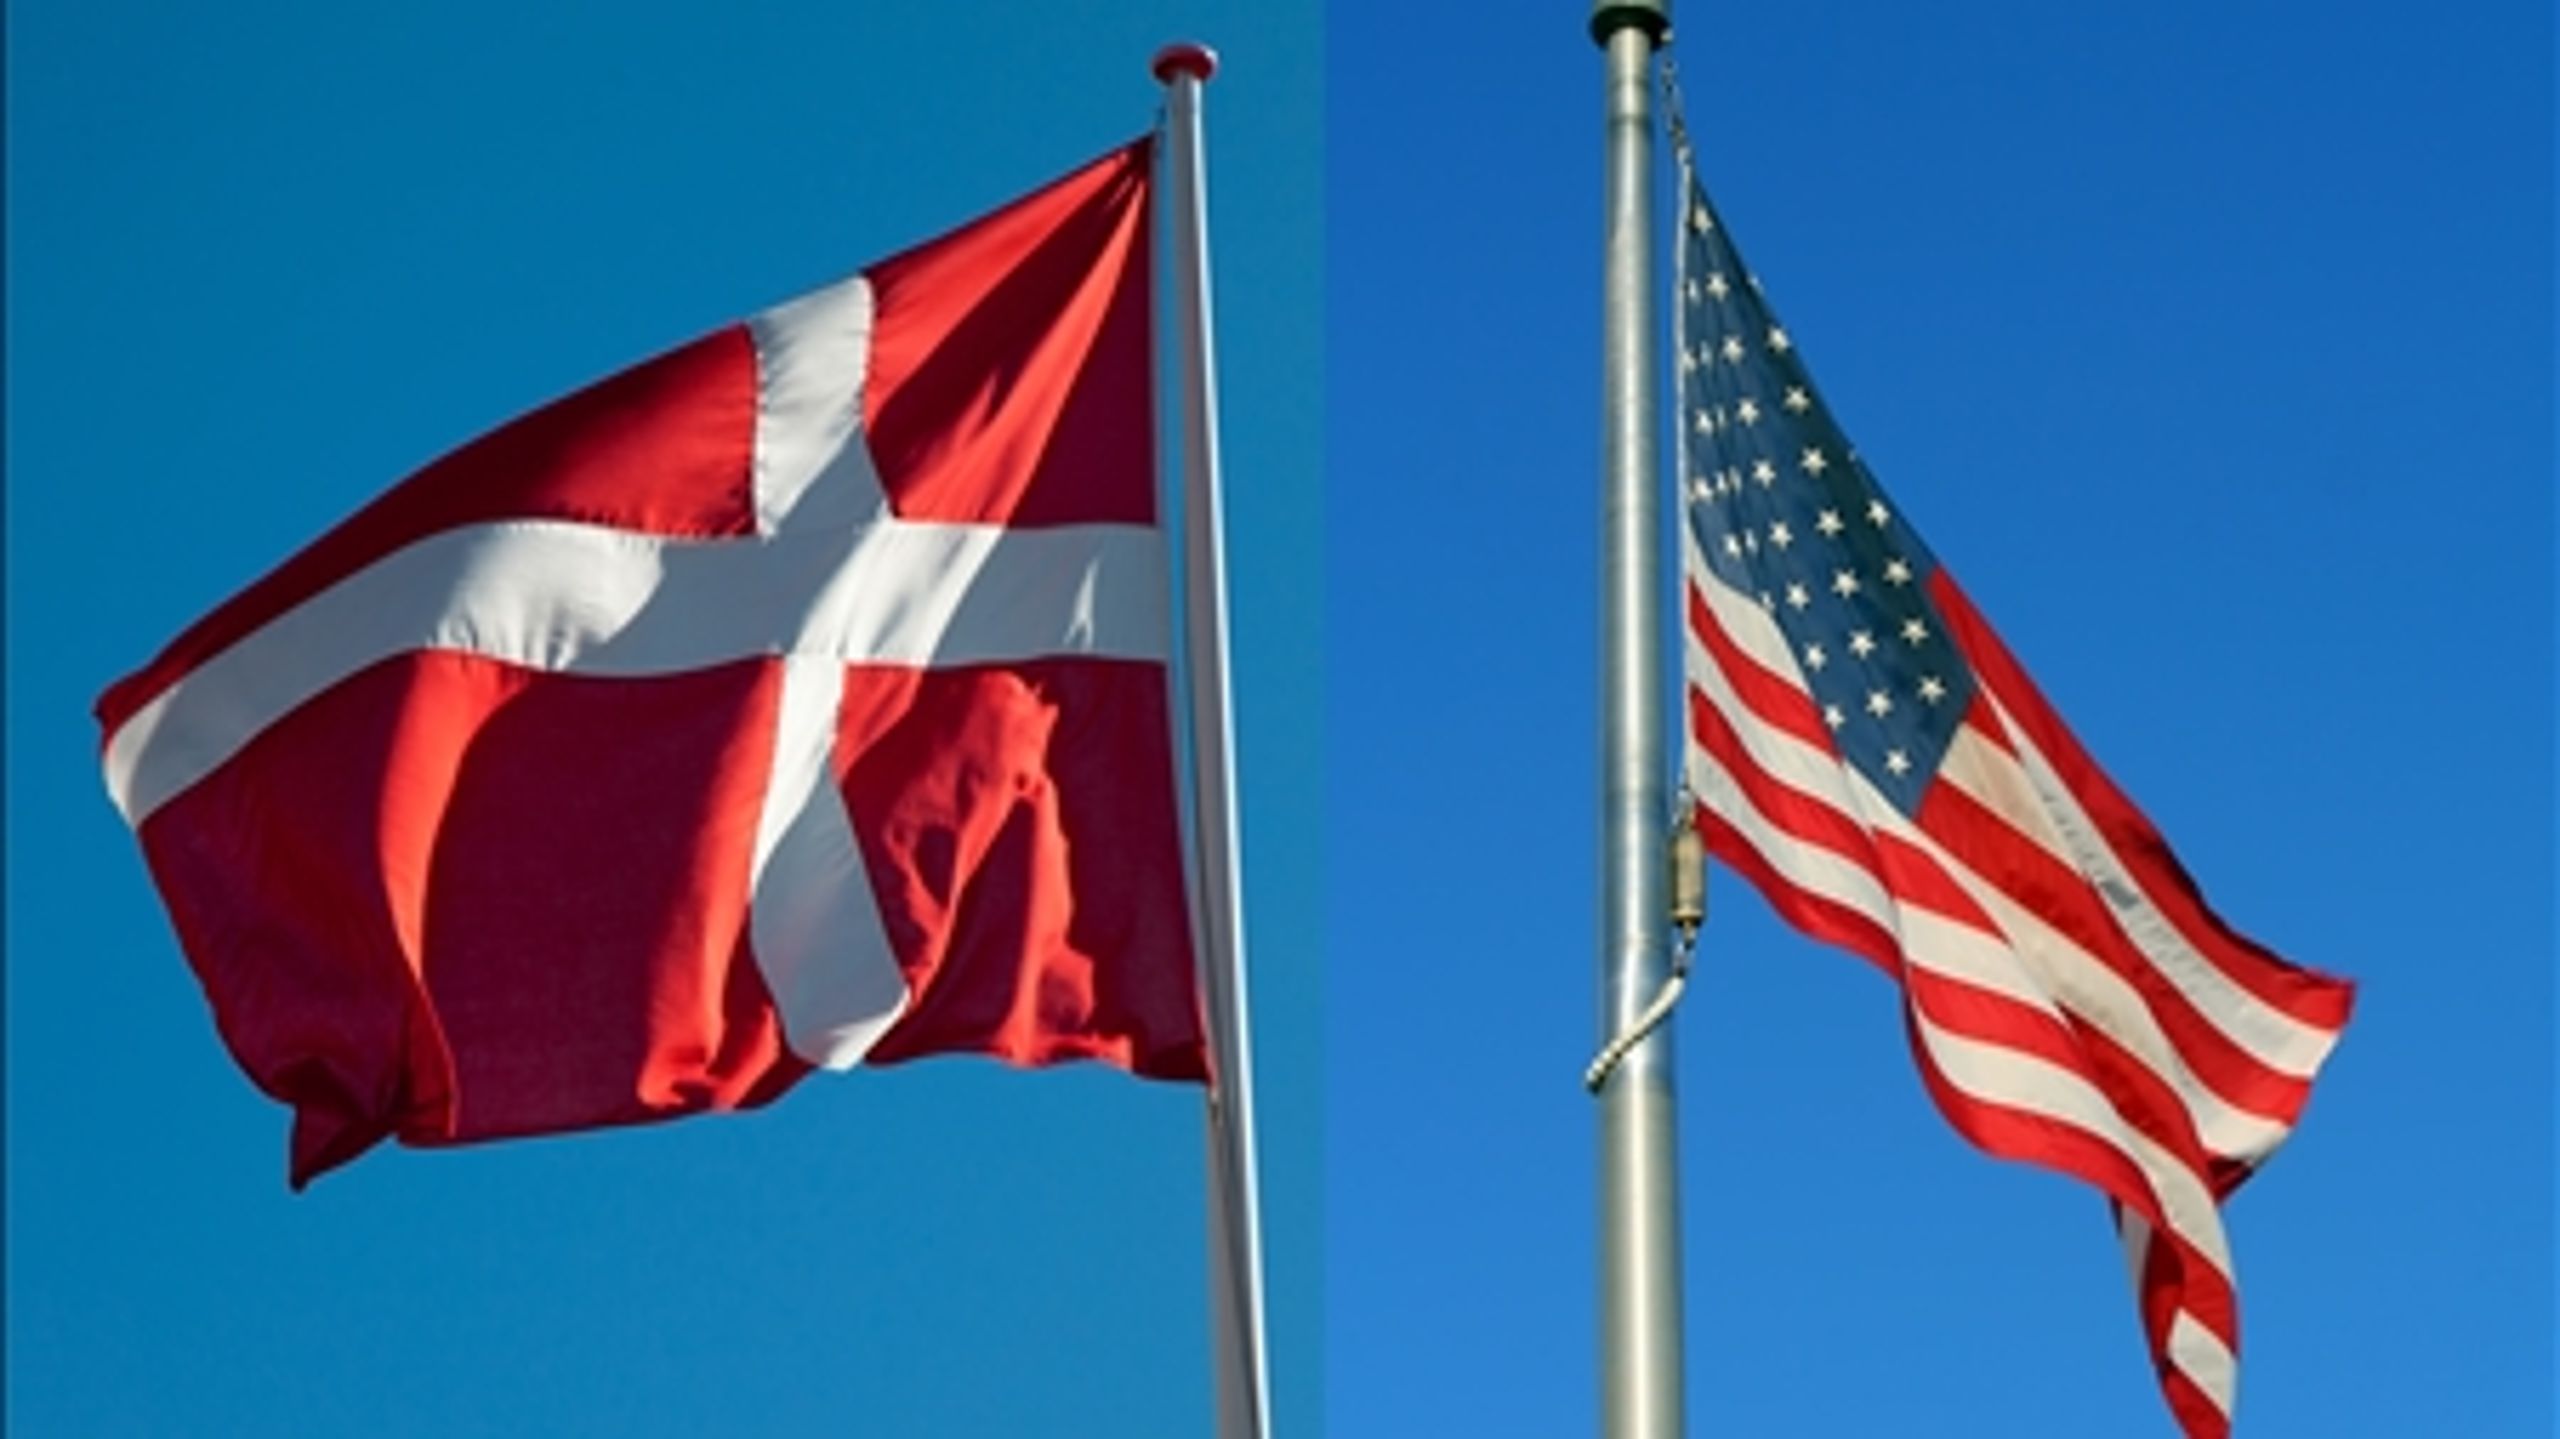 ENSIDIGT PARLØB. Selvom Danmark støttede USA med tropper i både Irak og Afghanistan, var den amerikanske støtte decideret lunken, da Danmark røg ud i århundredes stormvejr under Muhammed-krisen.